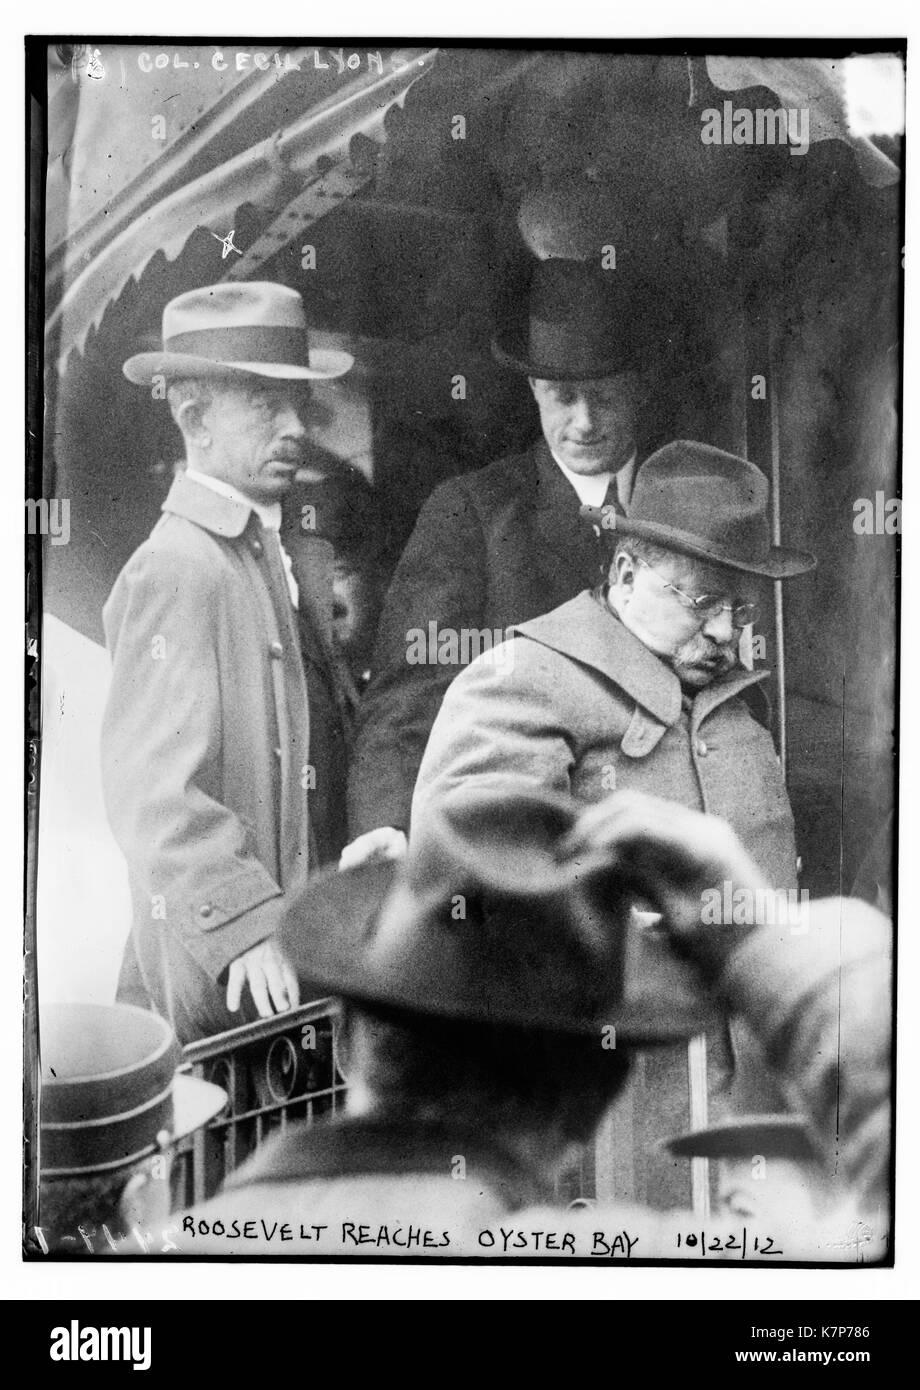 La foto mostra il presidente Teddy Roosevelt scendere un treno in Oyster Bay, Long Island, a seguito di un tentativo di assassinio da John F. Schrank. Col. Cecil Lione è dietro di lui sul treno. 10/22/12. Foto Stock